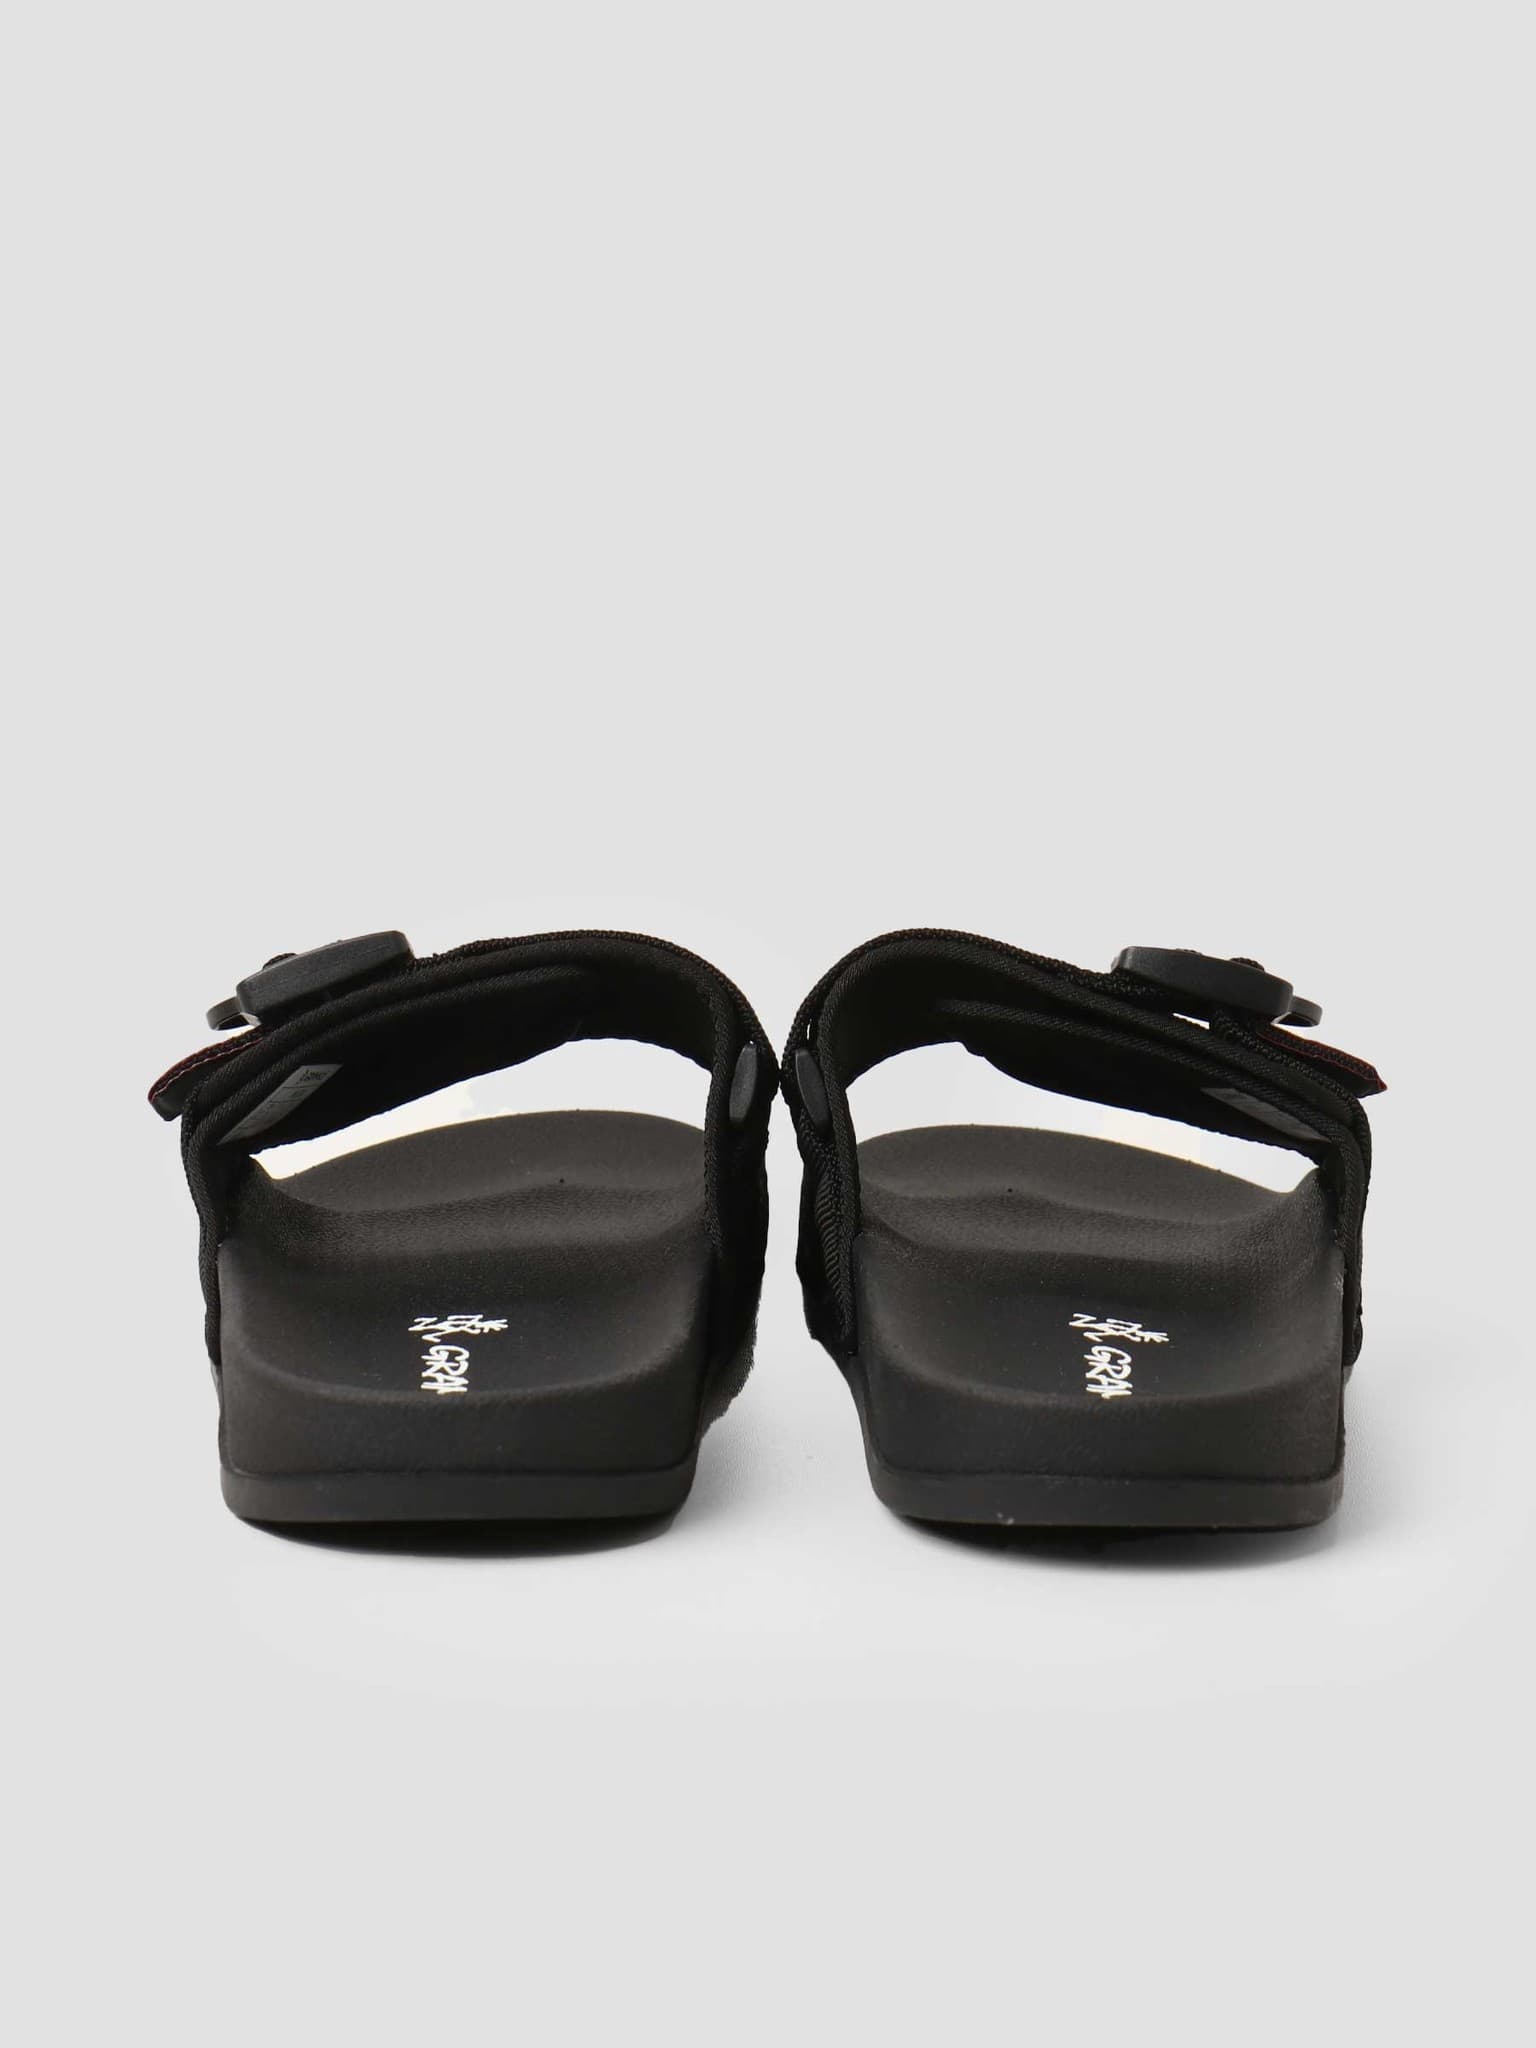 Slide Sandals Black GRF-004